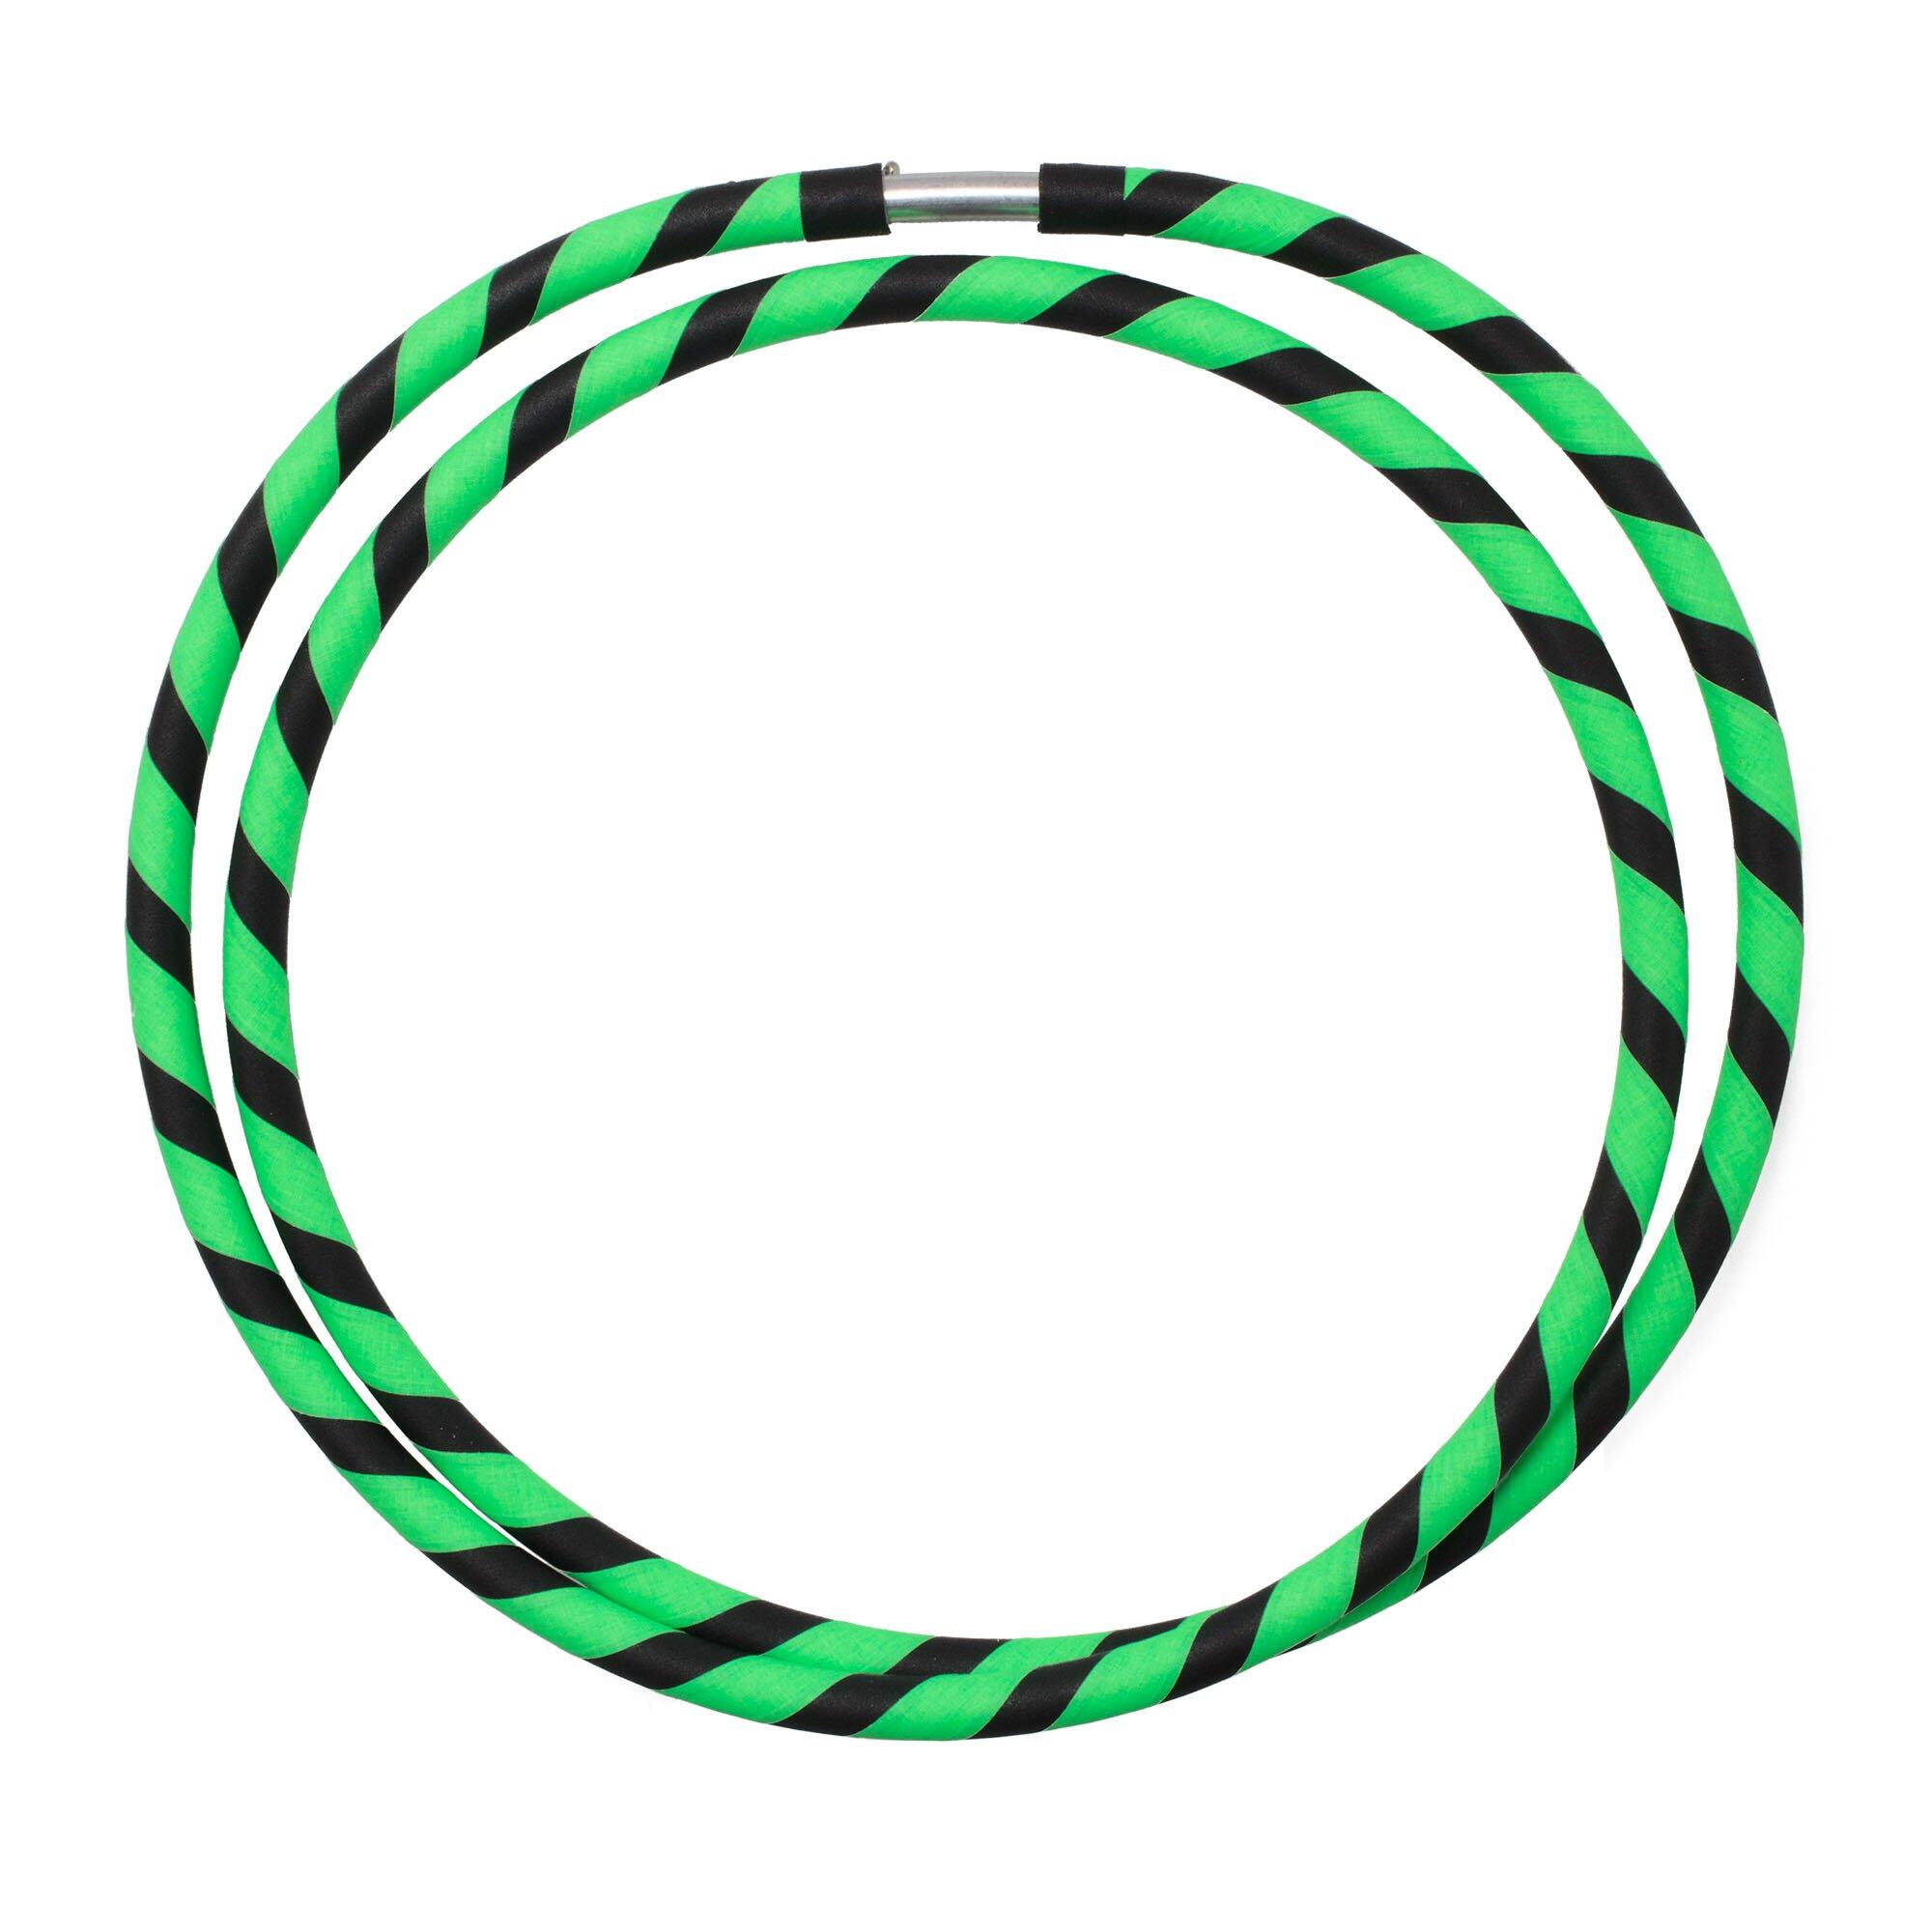 ECHO Echo Hoops - Collapsible Travel Hoop-UV Green/Black